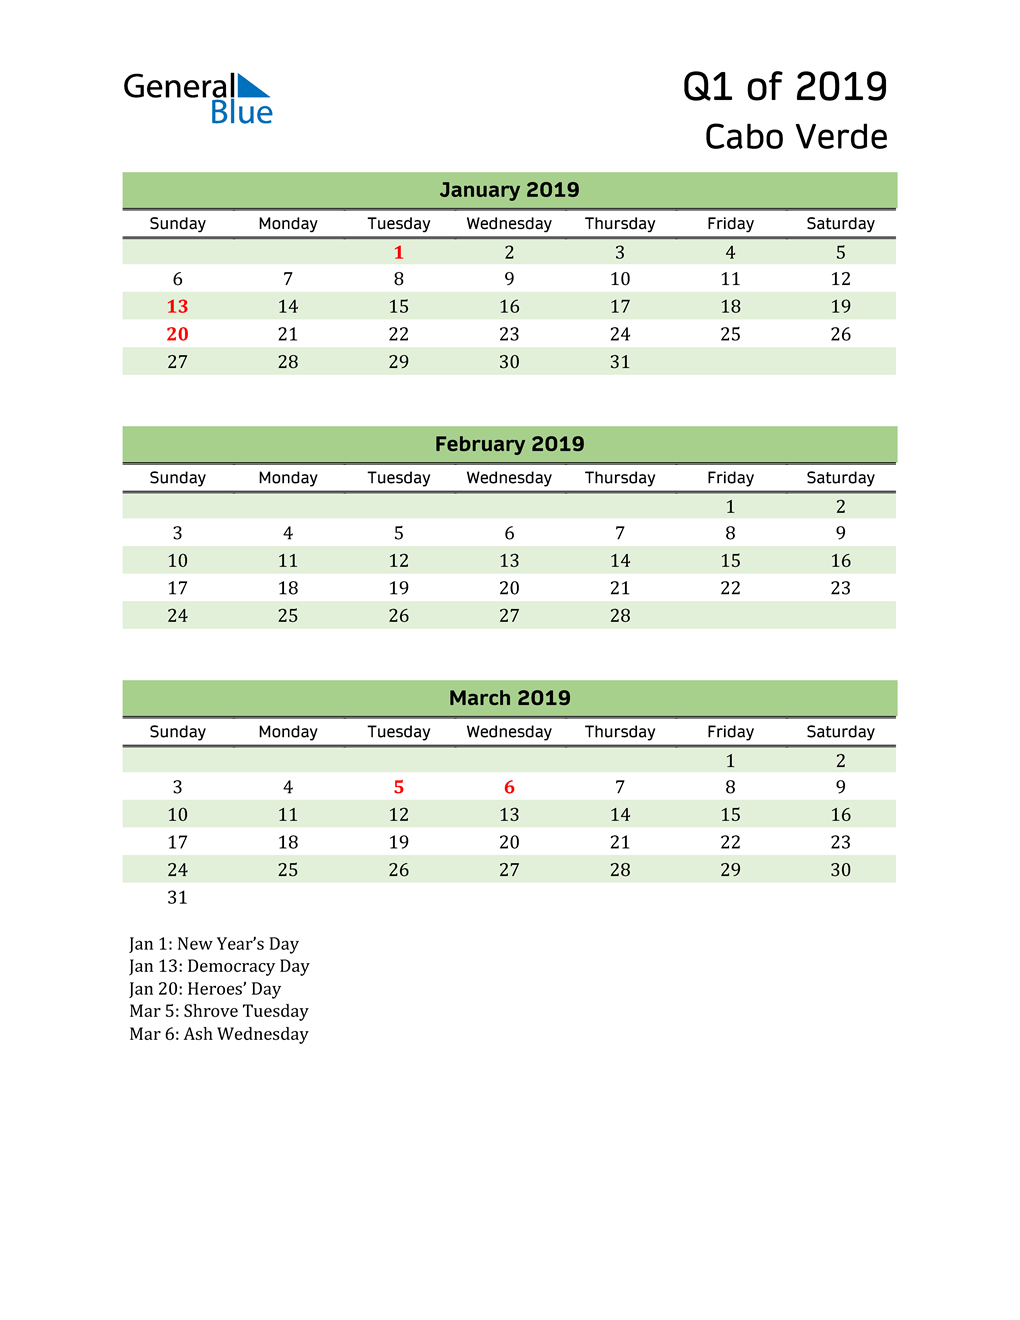  Quarterly Calendar 2019 with Cabo Verde Holidays 